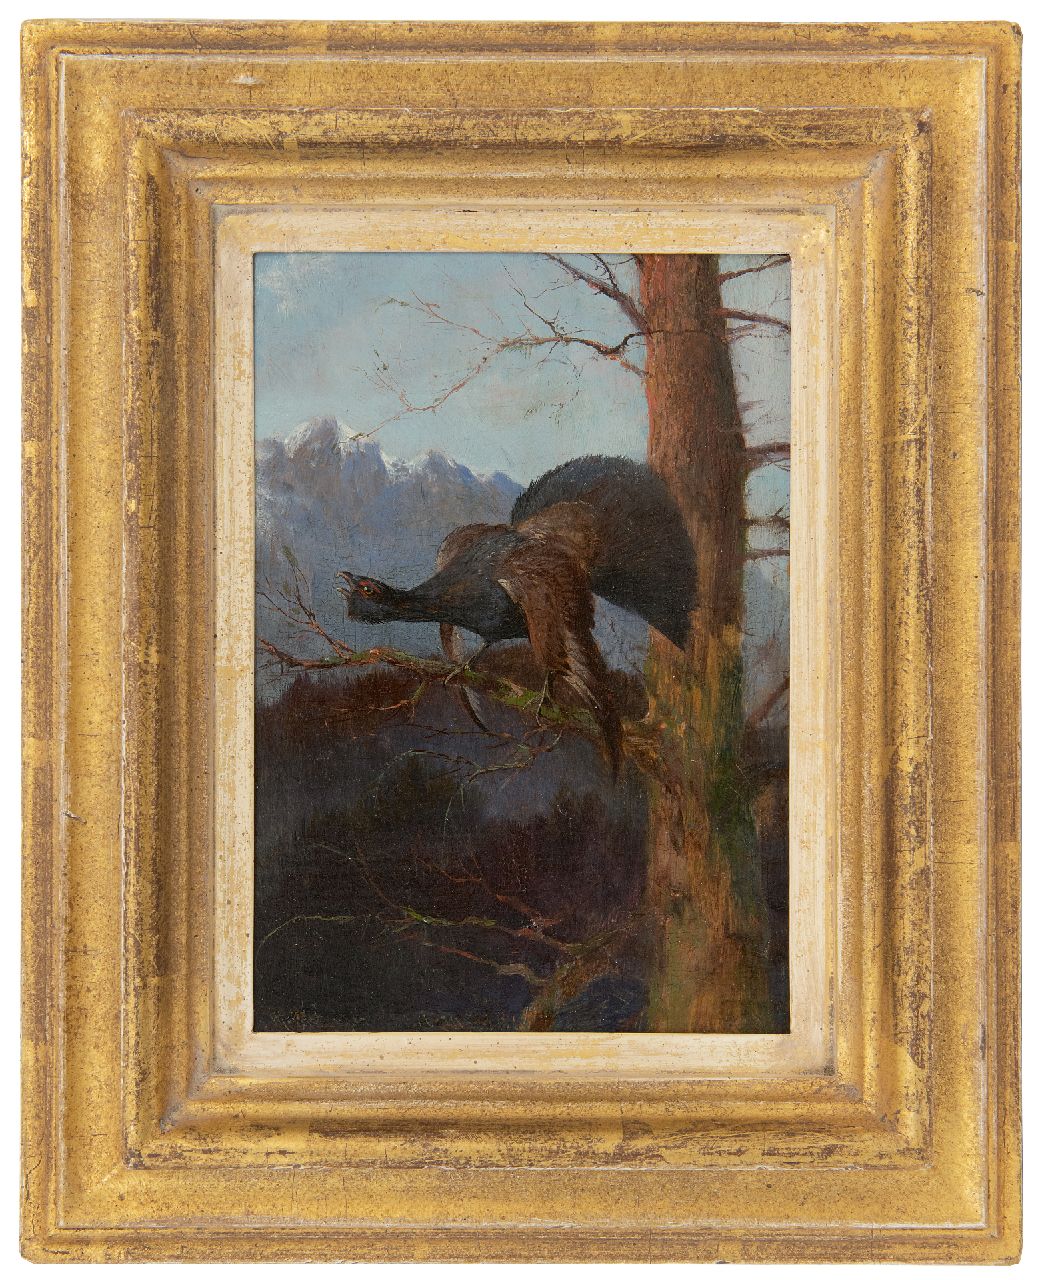 Hänger M.  | Max Hänger | Schilderijen te koop aangeboden | Korhoen naar links kijkend   (uit een paar), olieverf op paneel 19,2 x 13,2 cm, gesigneerd linksonder